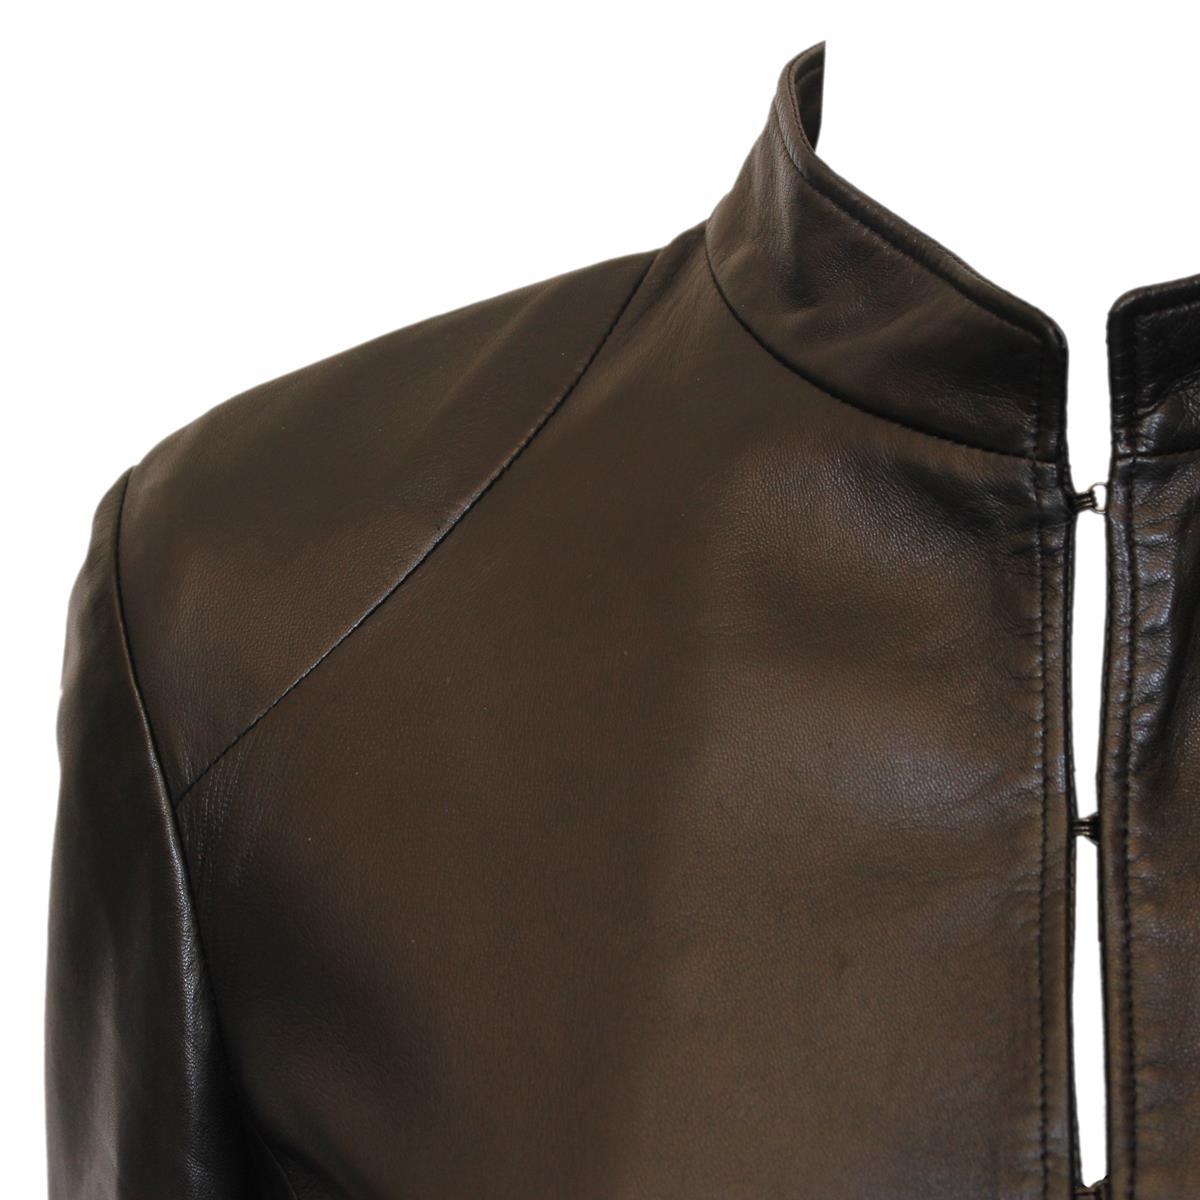 Fantastique veste de Ruffo Research Italy
upersoft leather:: nappa
Couleur noire
Manches en 